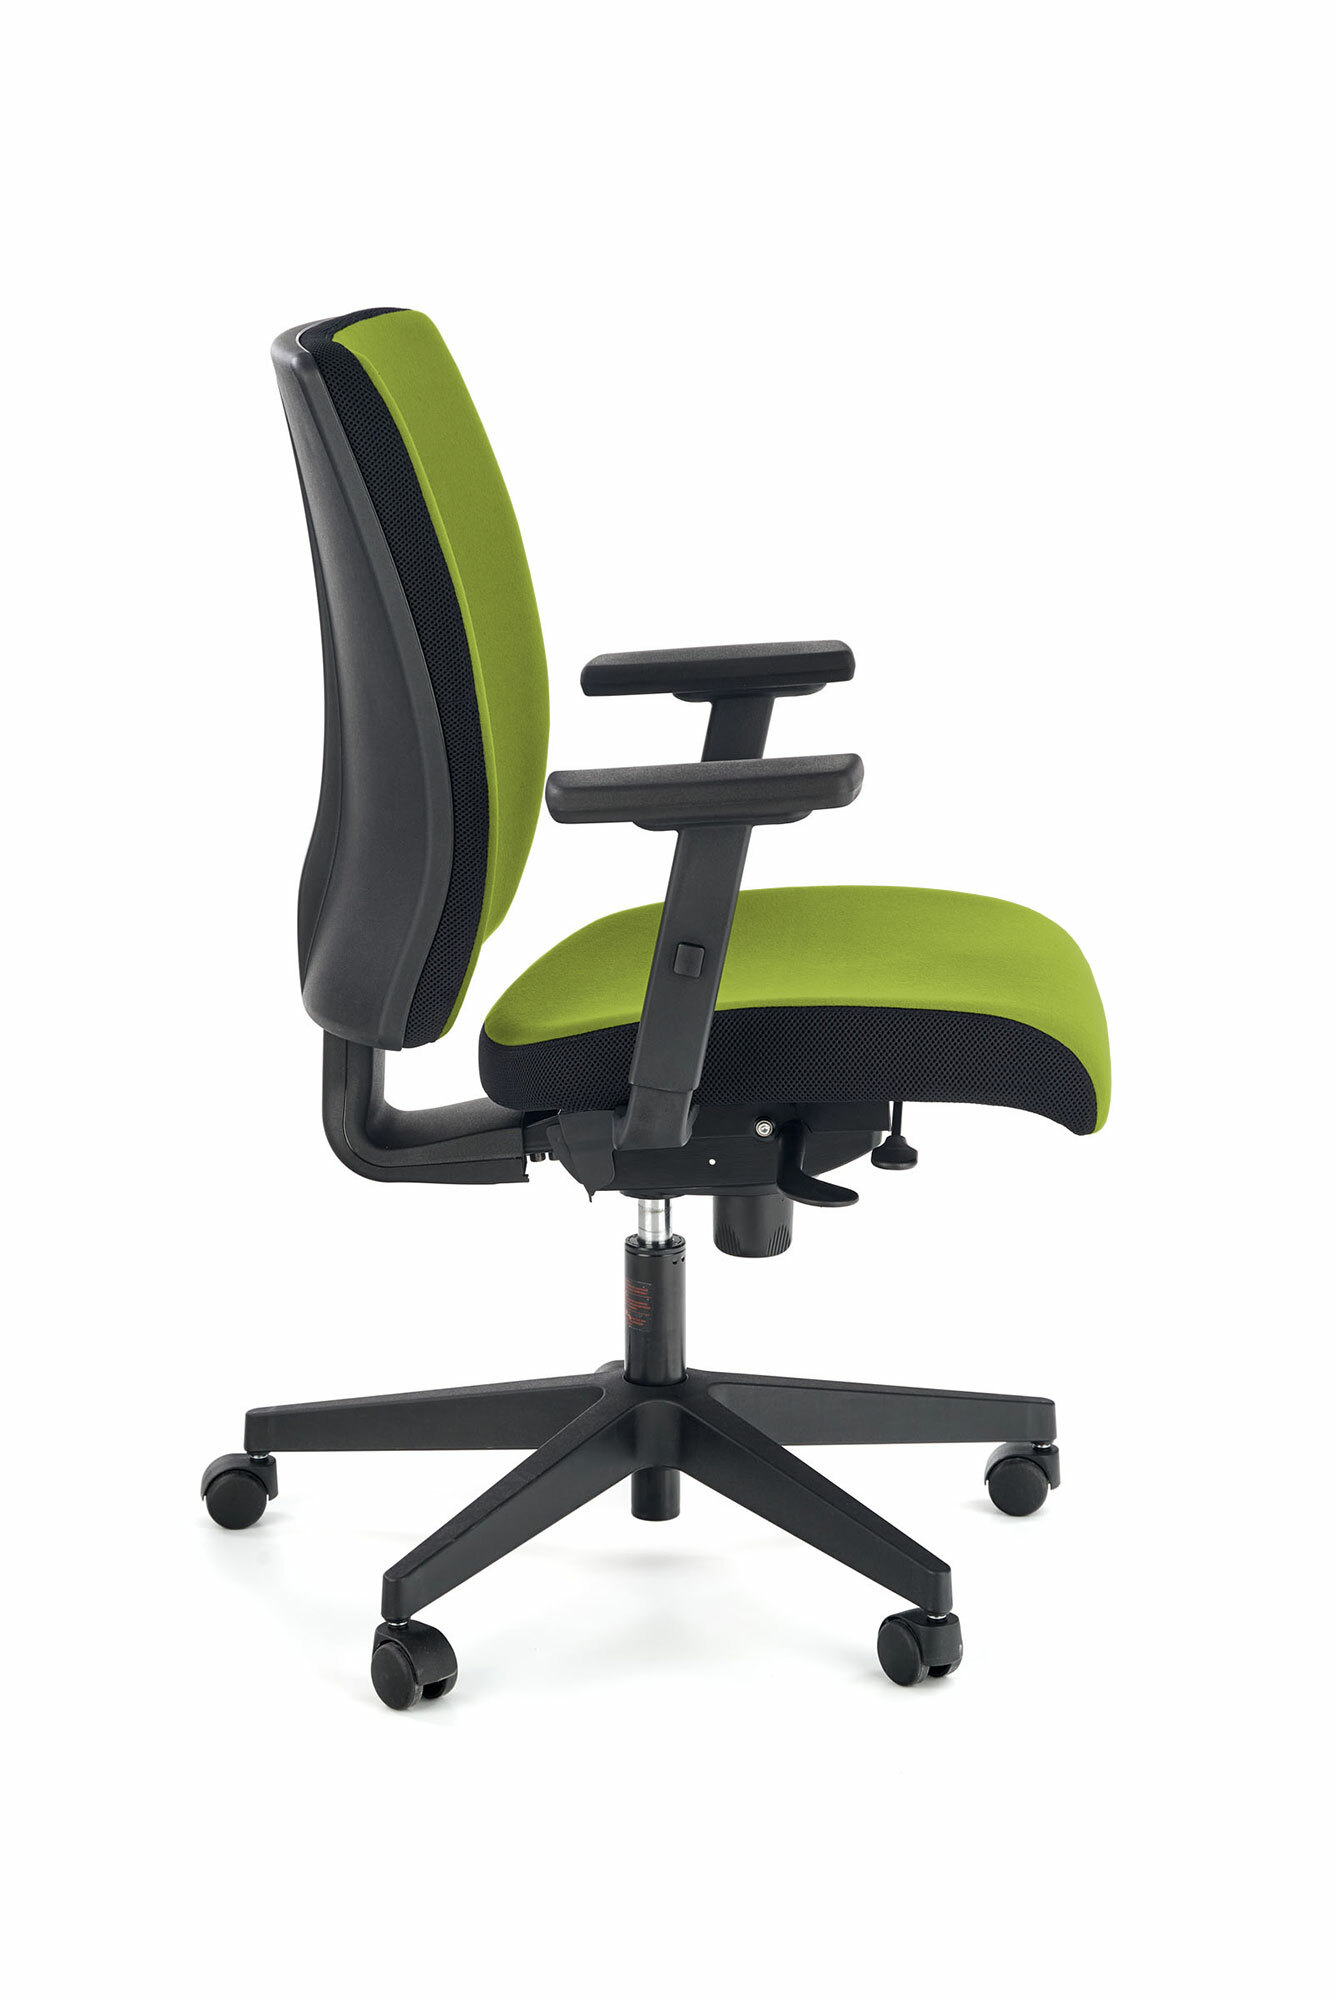 POP fotel pracowniczy, kolor: pasek boczny - czarny RN60999, front - zielony M38